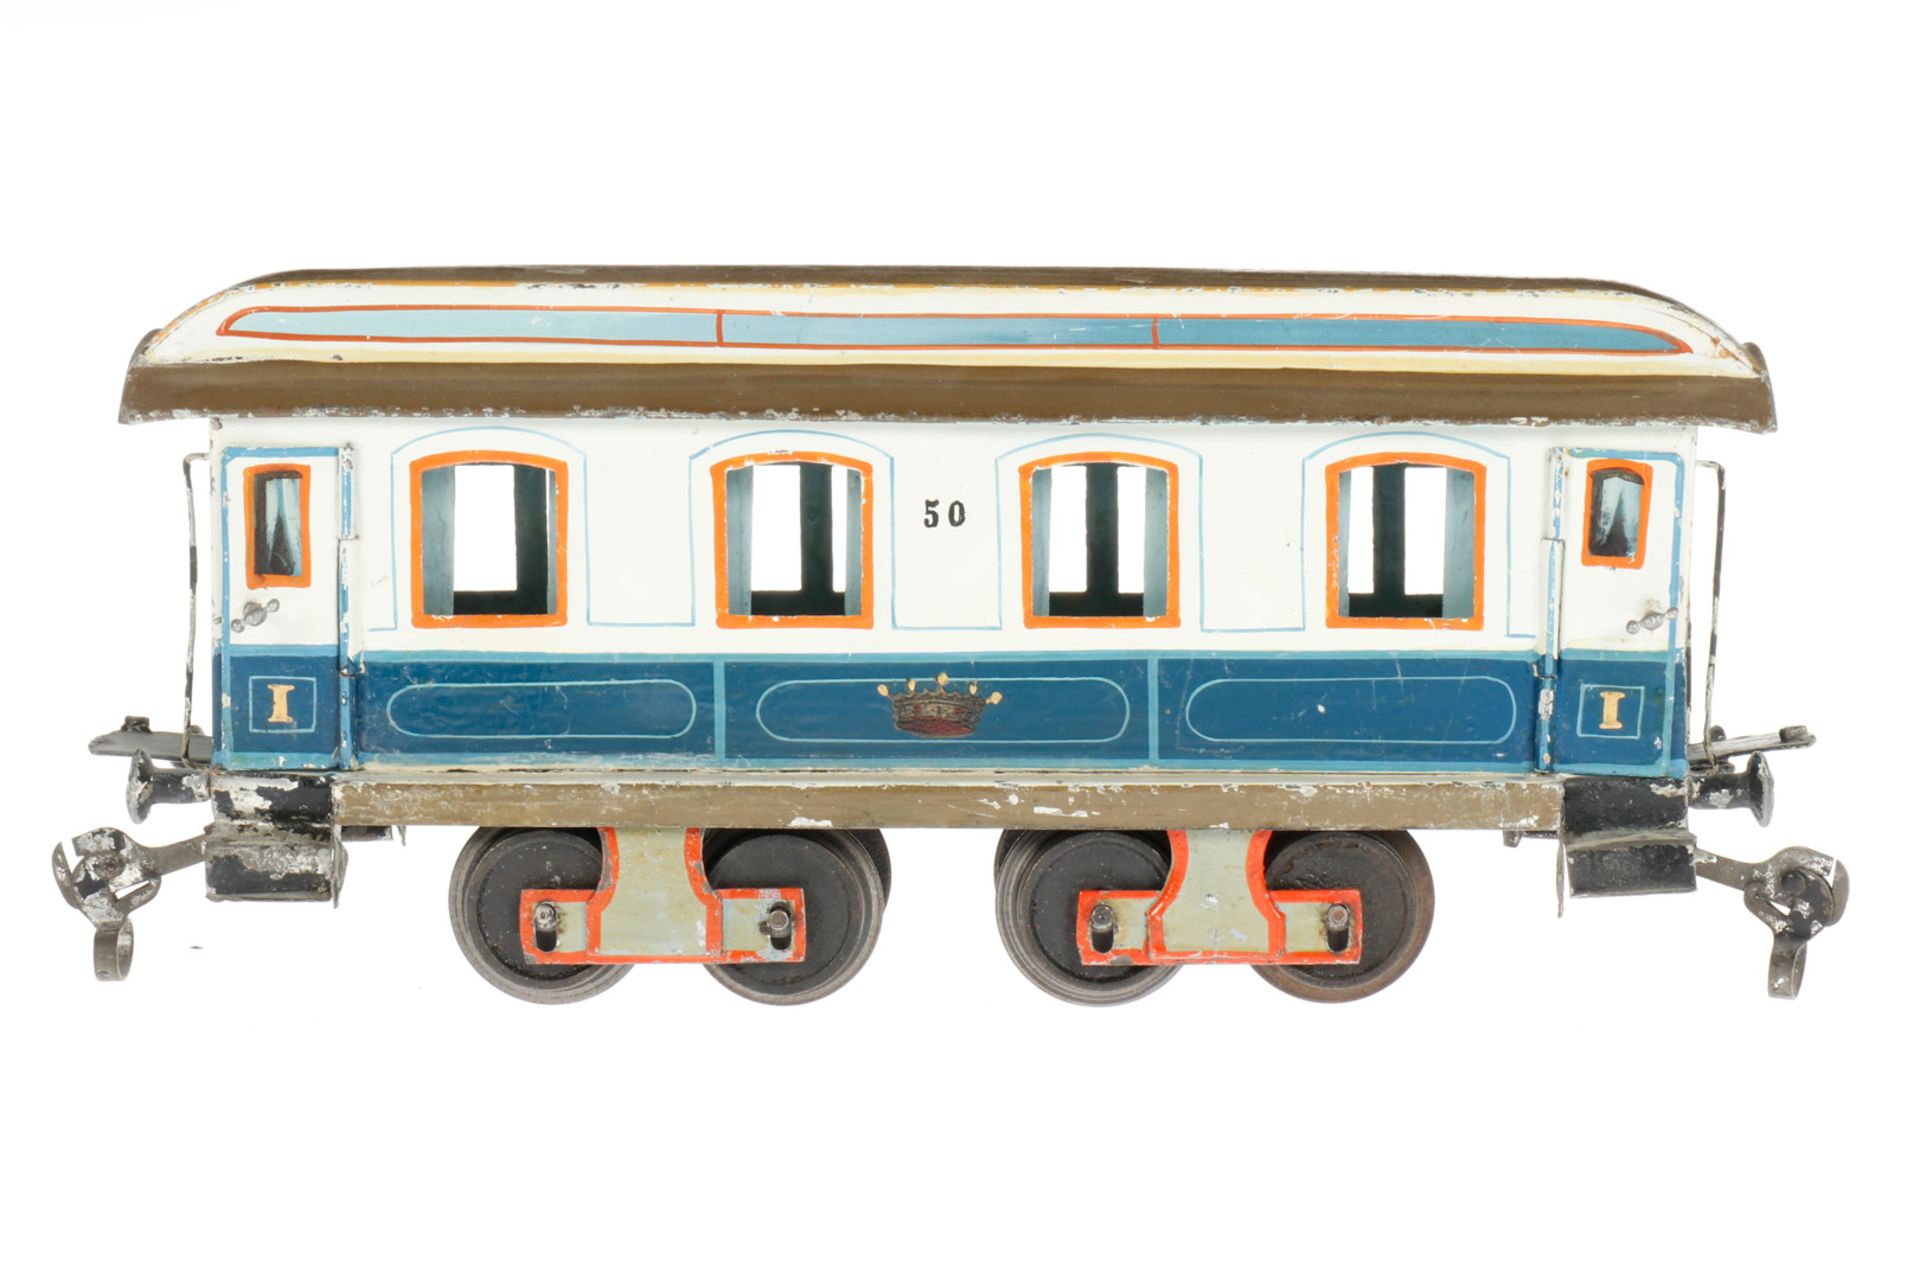 Märklin Personenwagen “50“ 1841 K, S 1, uralt, blau/weiß, HL, mit Inneneinrichtung, 4 AT und